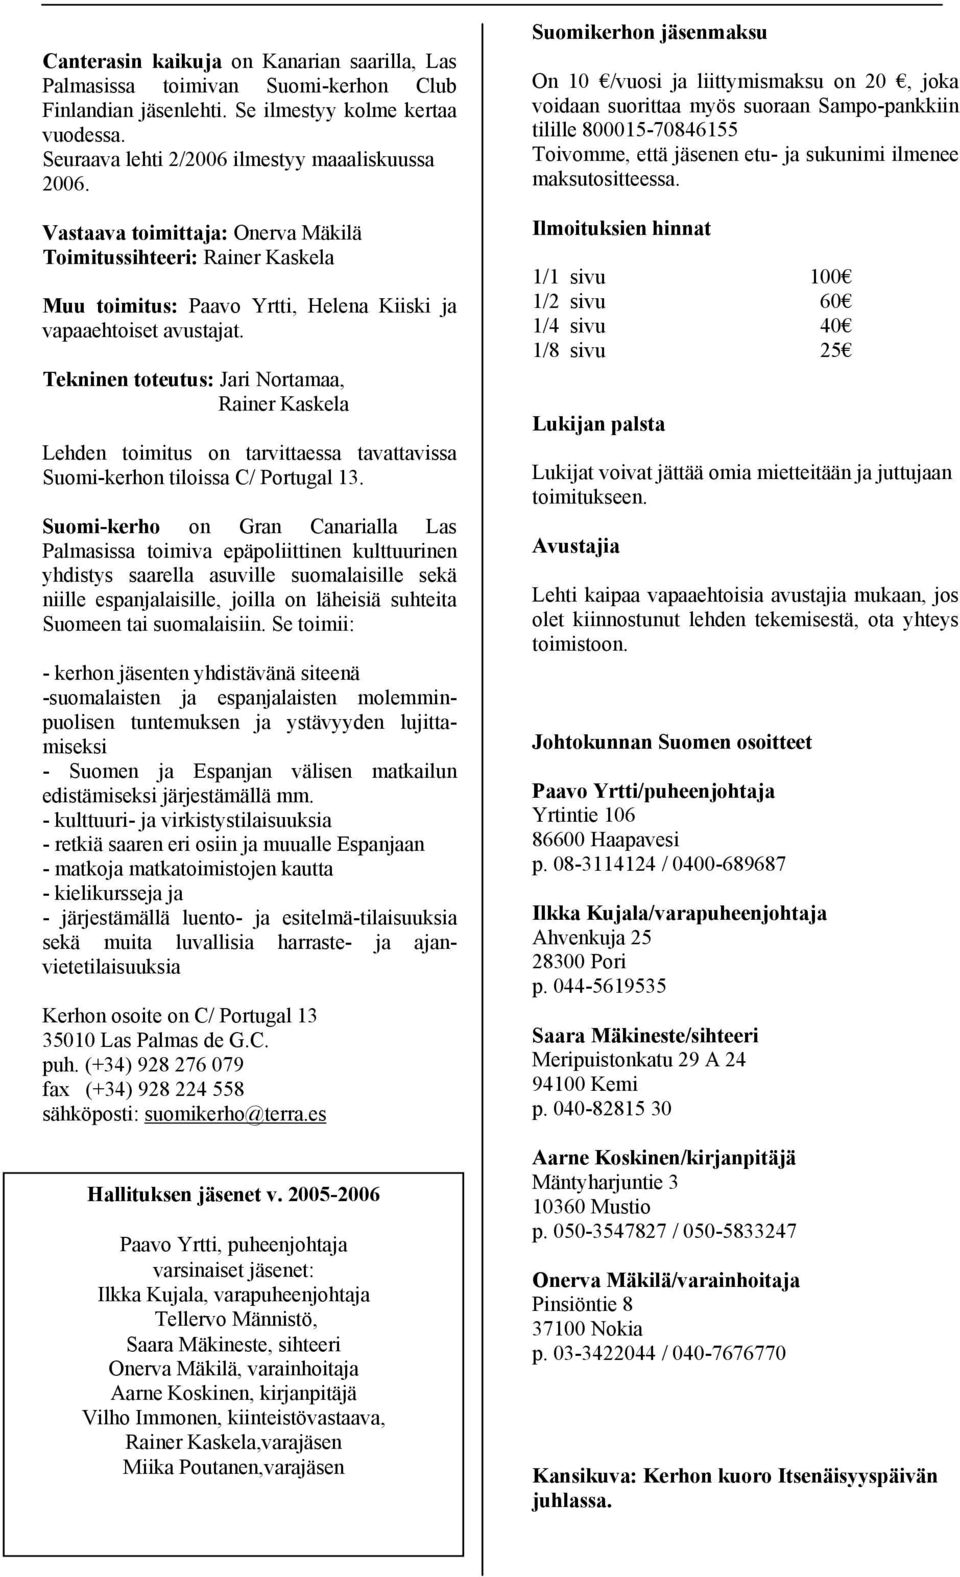 Tekninen toteutus: Jari Nortamaa, Rainer Kaskela Lehden toimitus on tarvittaessa tavattavissa Suomi-kerhon tiloissa C/ Portugal 13.